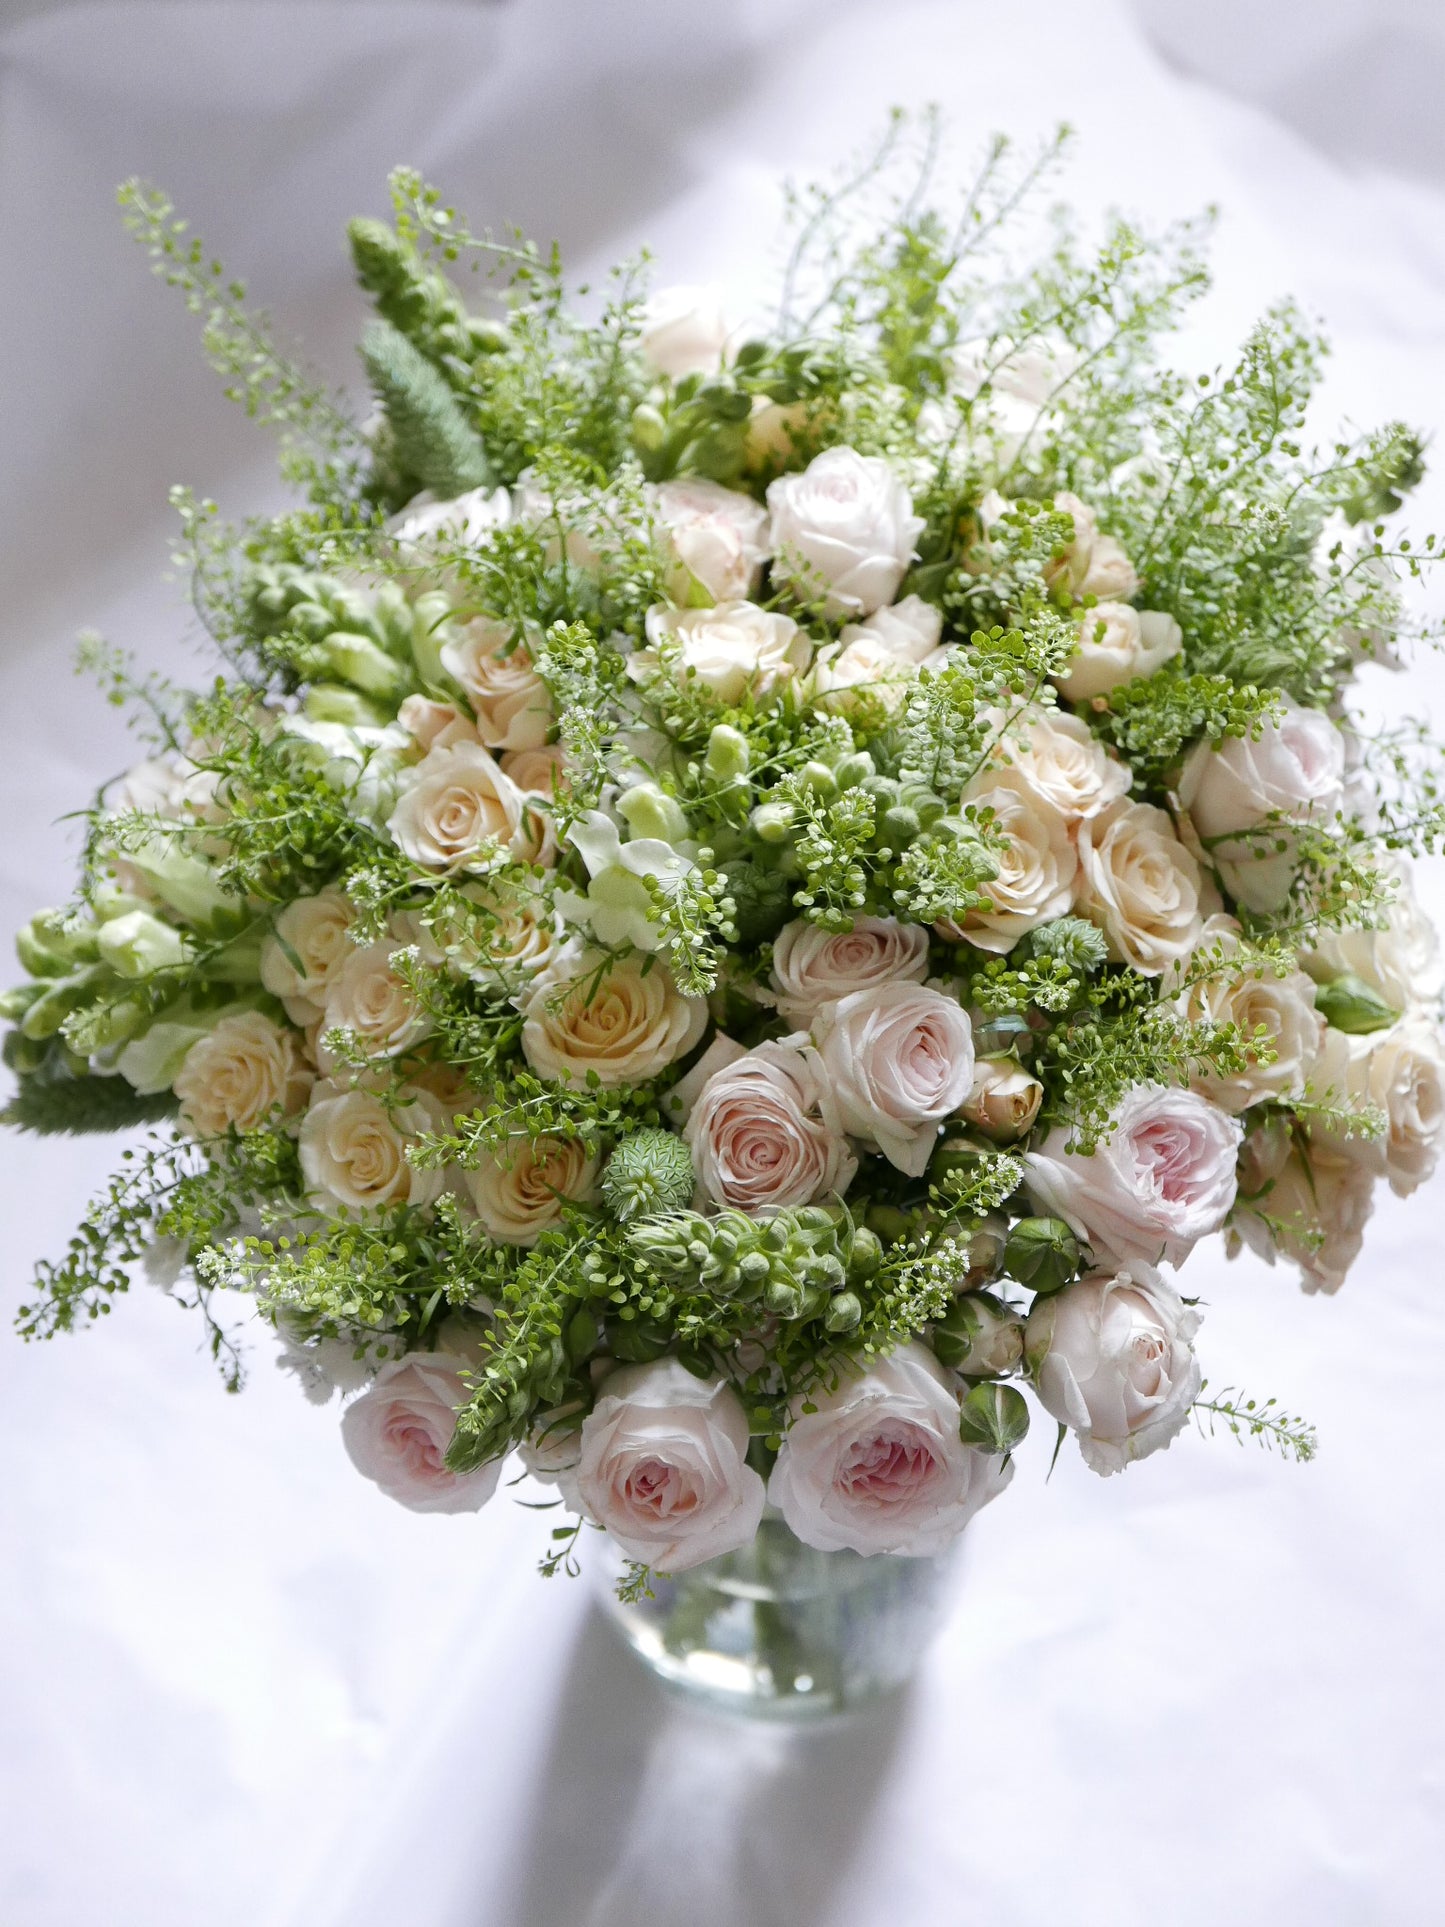 Großer Bioblumenstrauß Hochzeit rosen weiß grün slow flowers